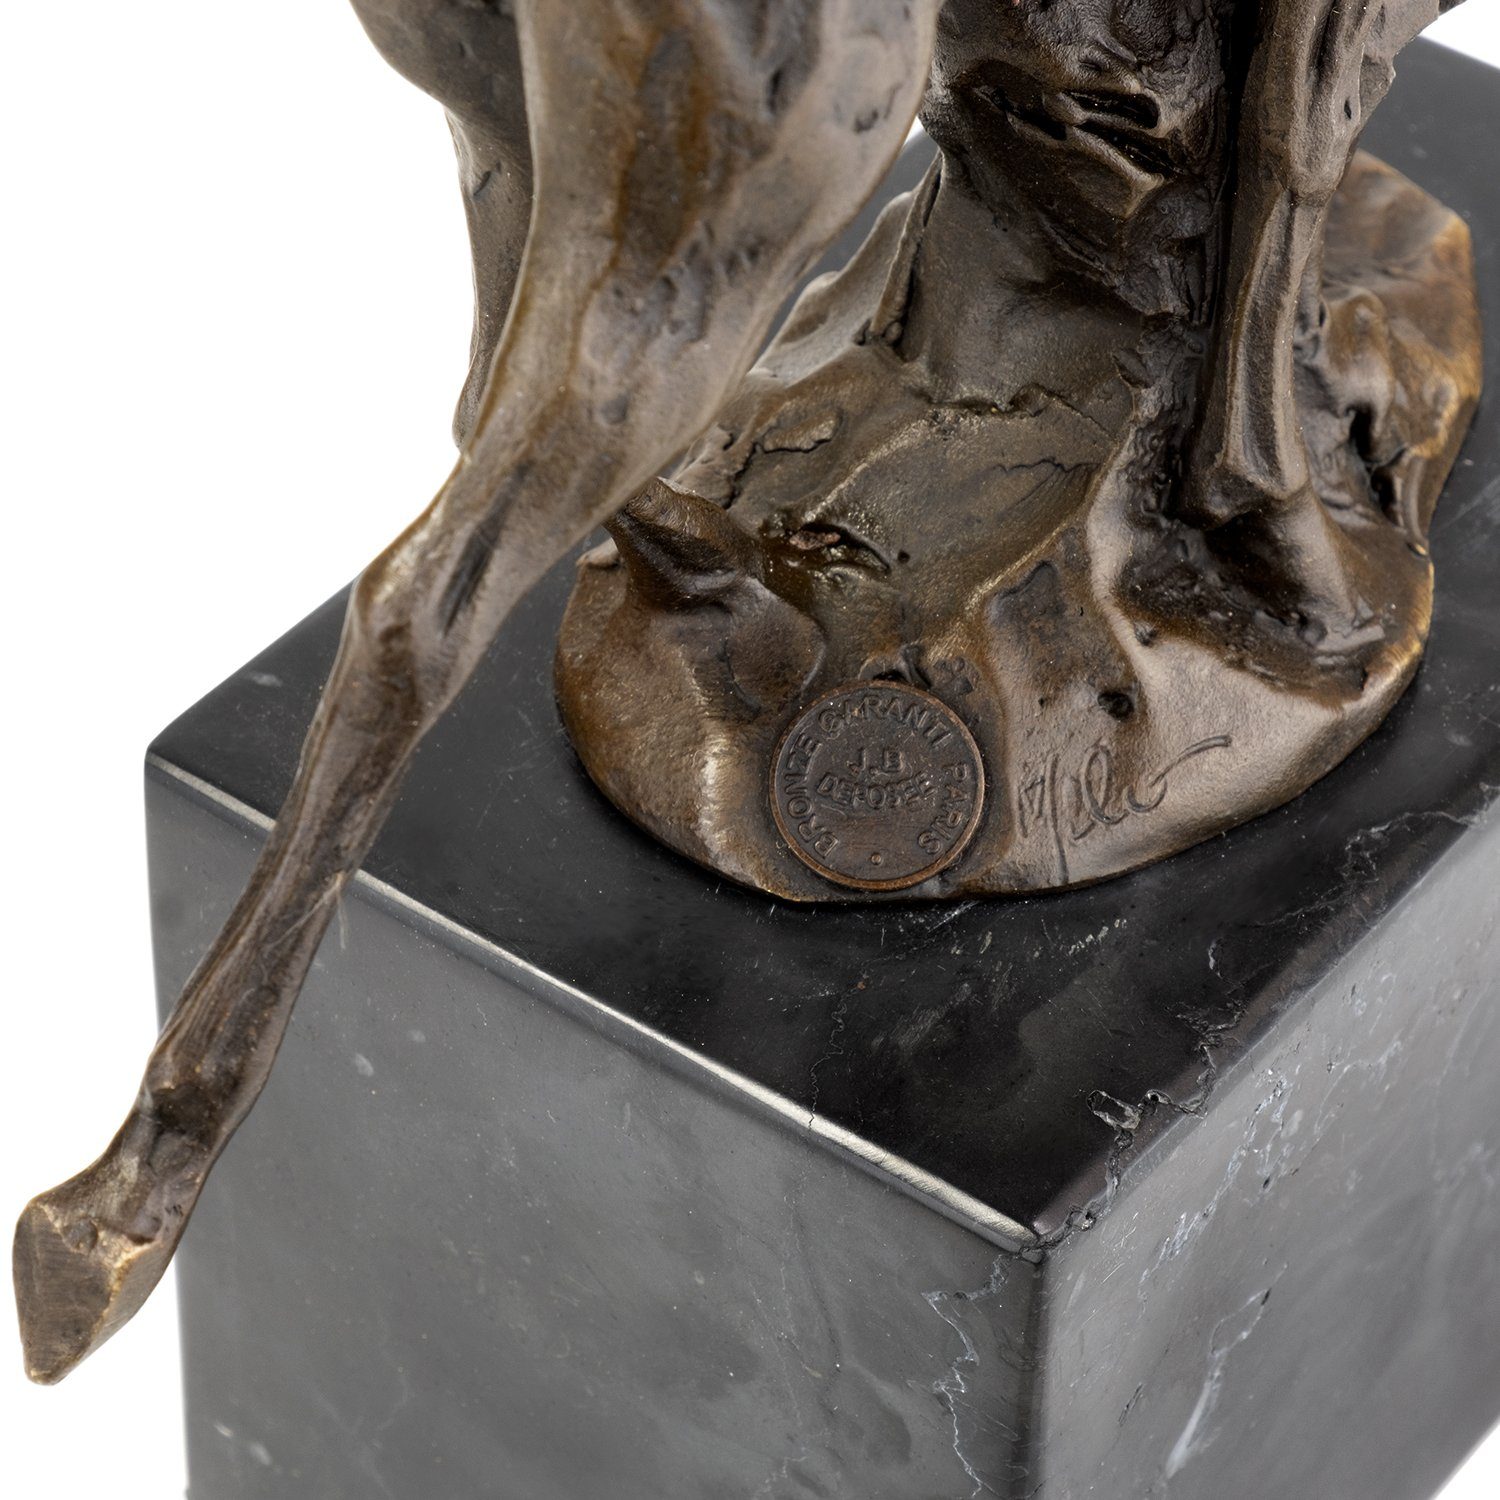 Moritz Skulptur Bronzefigur Rotwild, Vitrine Figuren Skulptur Schreibtisch Deko Bronzefigur für Regal